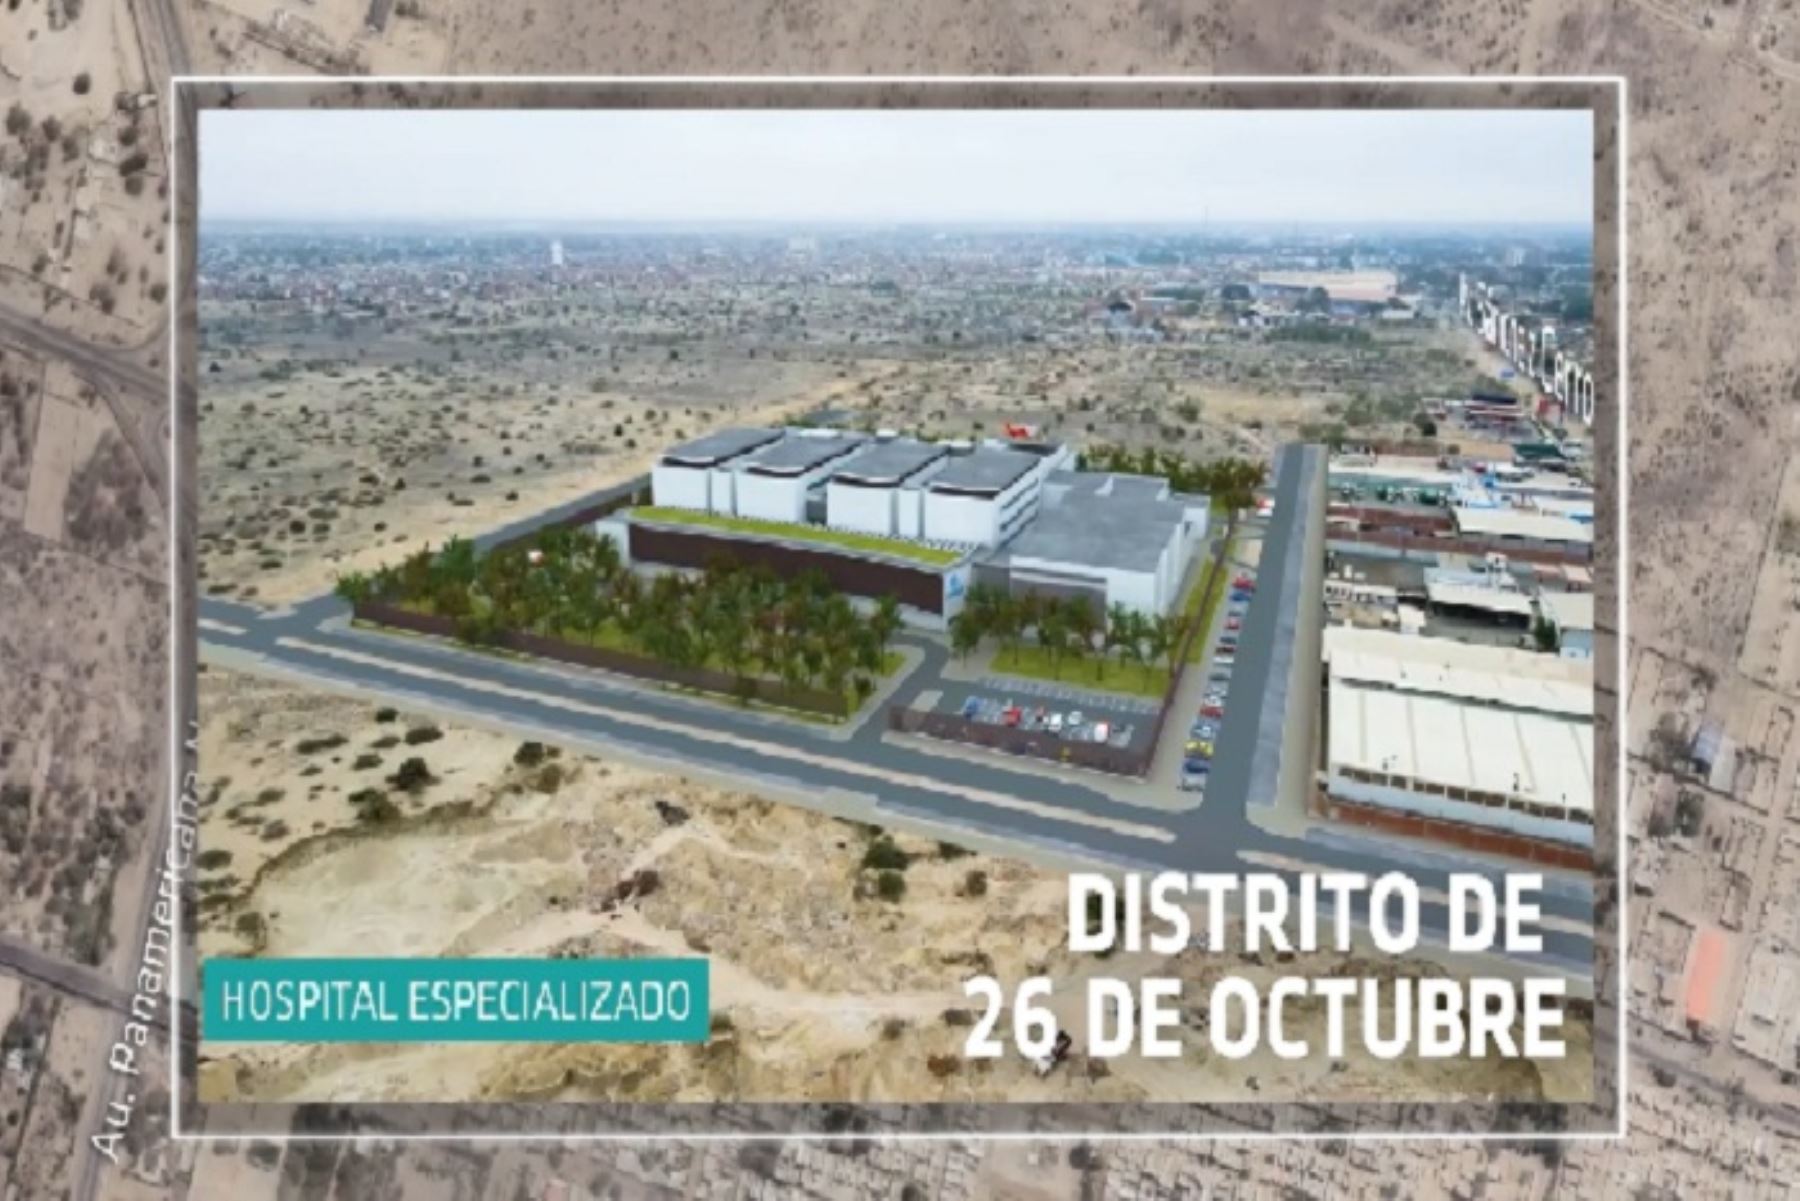 Hospital Especializado de Piura de EsSalud se construirá sobre un terreno de 50,000 metros cuadrados y tendrá 487 camas, de las cuales 324 serán para hospitalización.